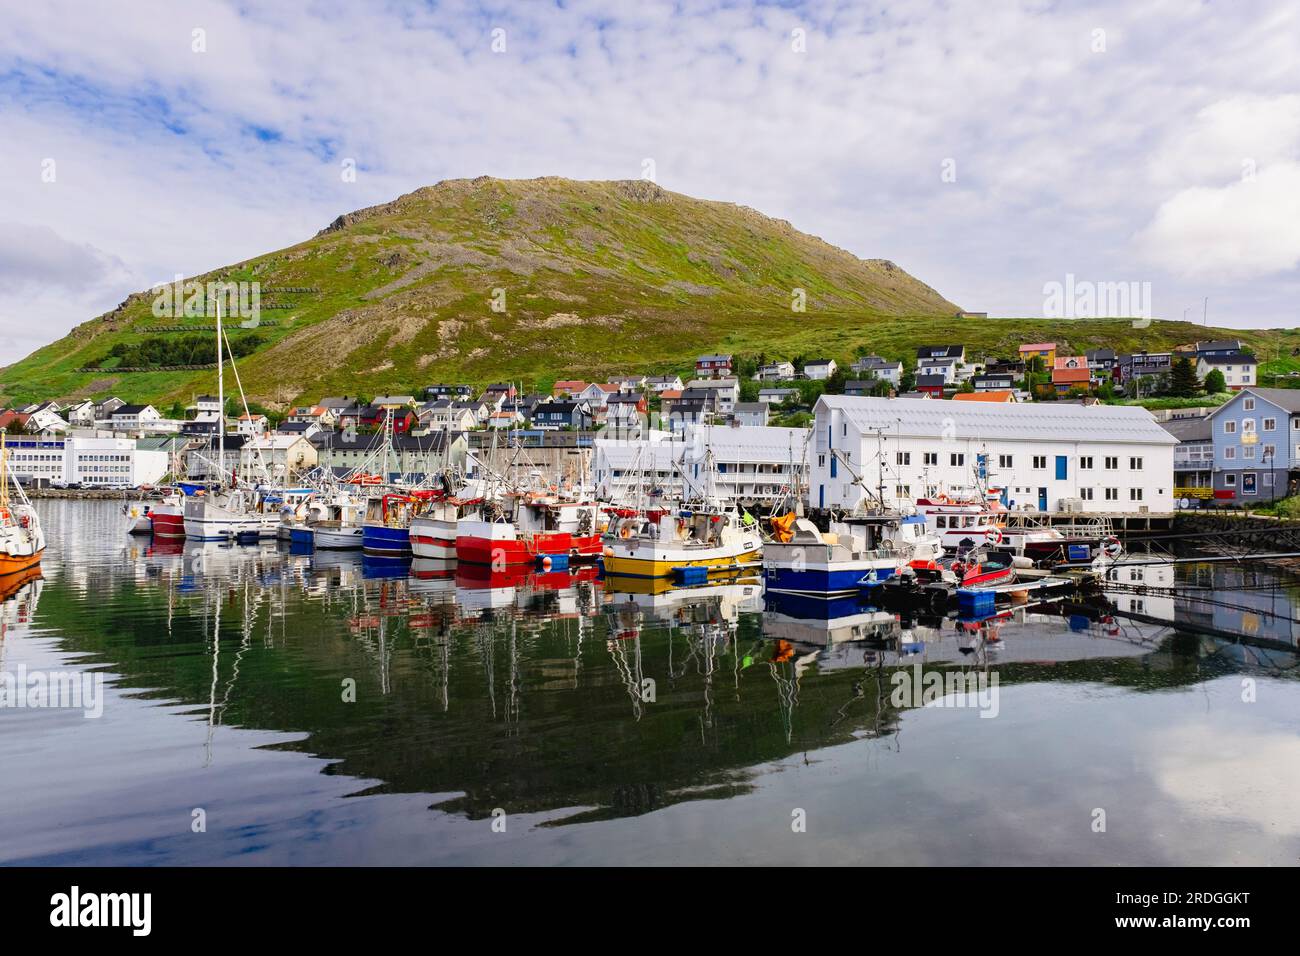 Edifici sul lungomare e barche nel porto della città più settentrionale sulla terraferma. Honningsvar, Troms og Finnmark, Norvegia, Scandinavia, Europa Foto Stock